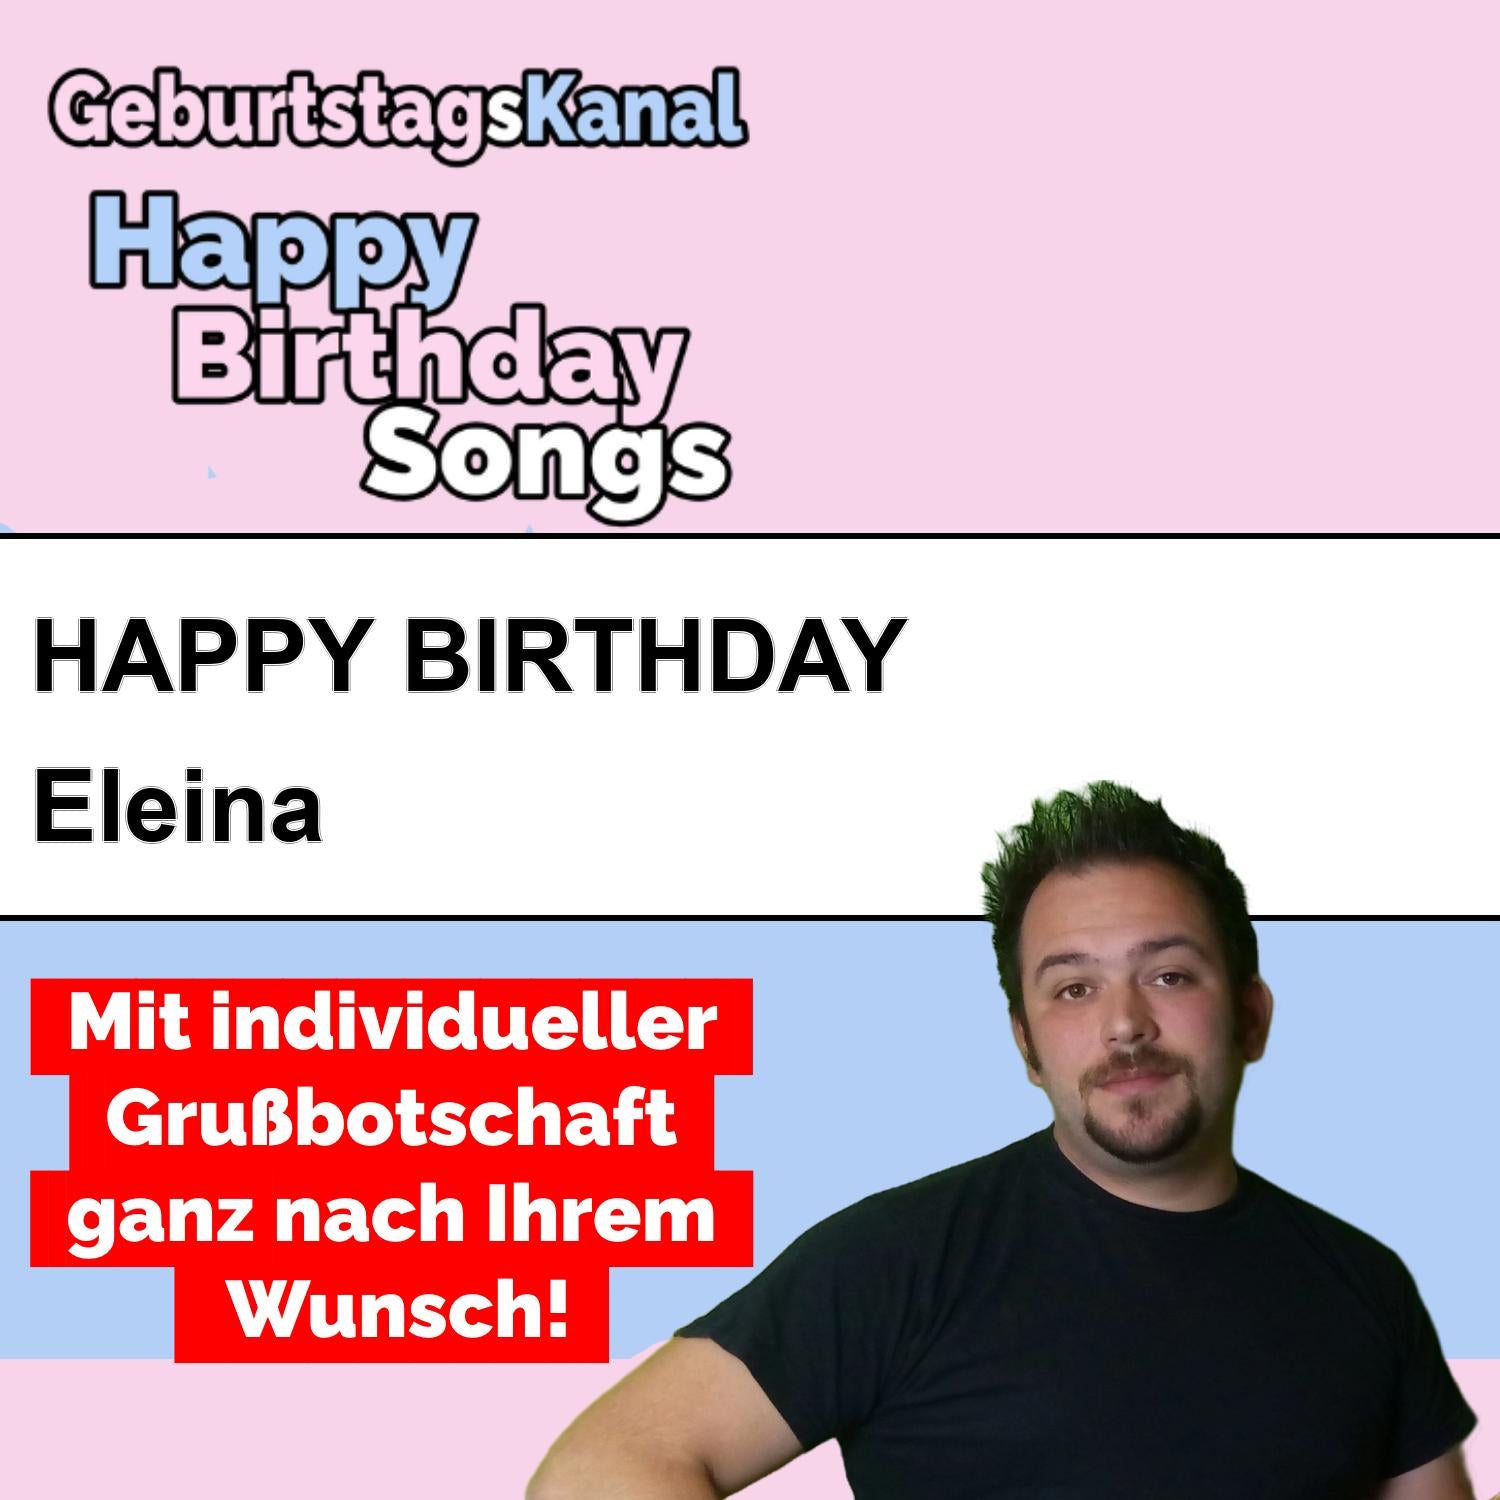 Produktbild Happy Birthday to you Eleina mit Wunschgrußbotschaft